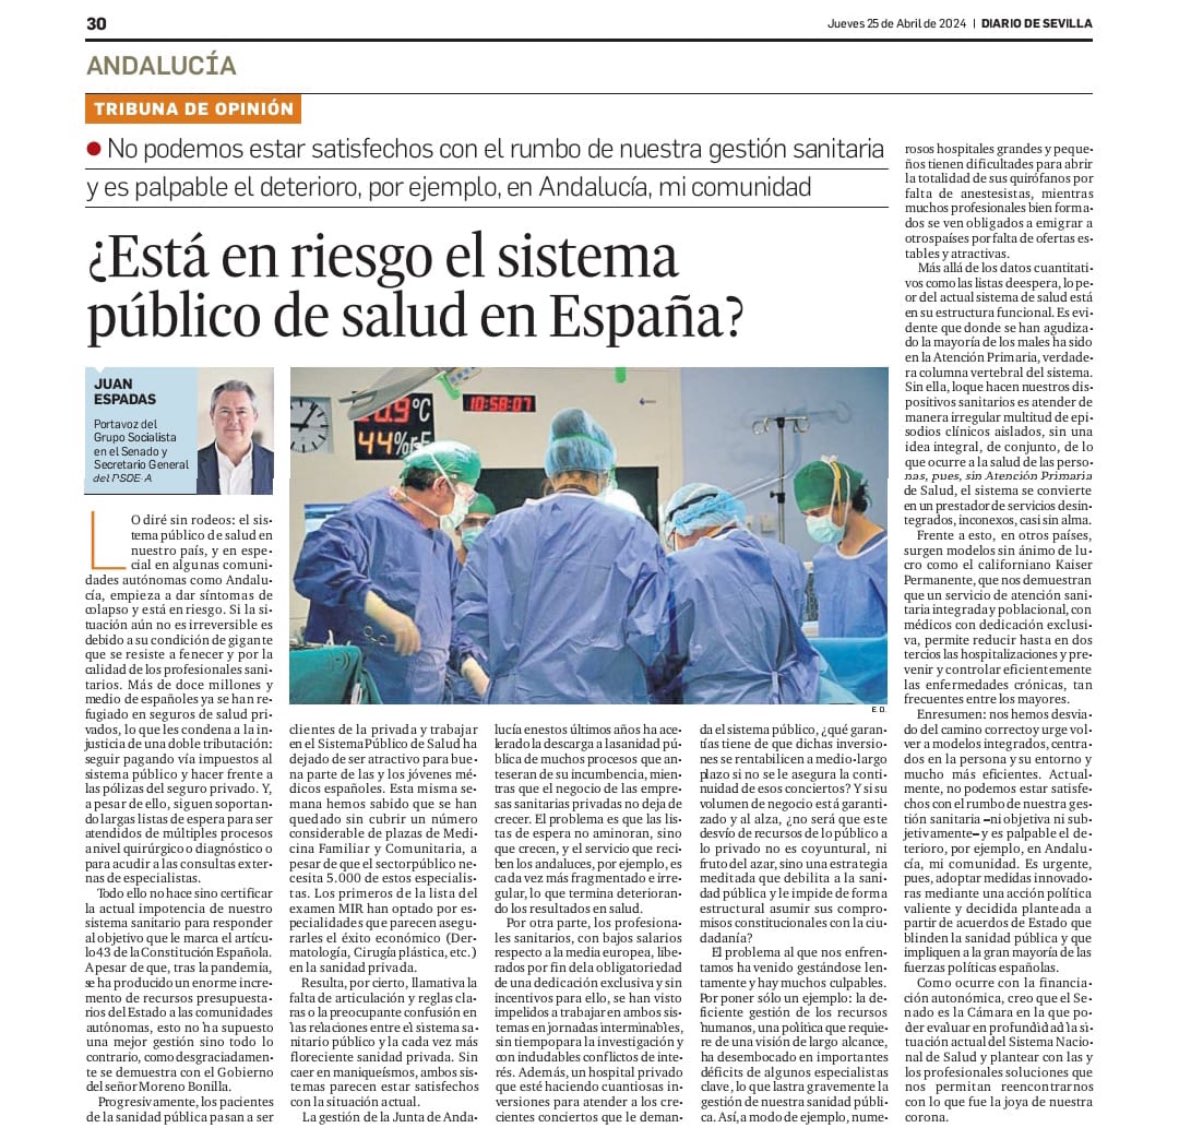 Nuestra sanidad pública, en especial en las CCAA gobernadas por el PP como Andalucía, está en riesgo. Moreno Bonilla es el paradigma: A más presupuesto, peor servicio, que acaba convirtiendo a los pacientes en clientes de los seguros privados. Trabajemos por un acuerdo de